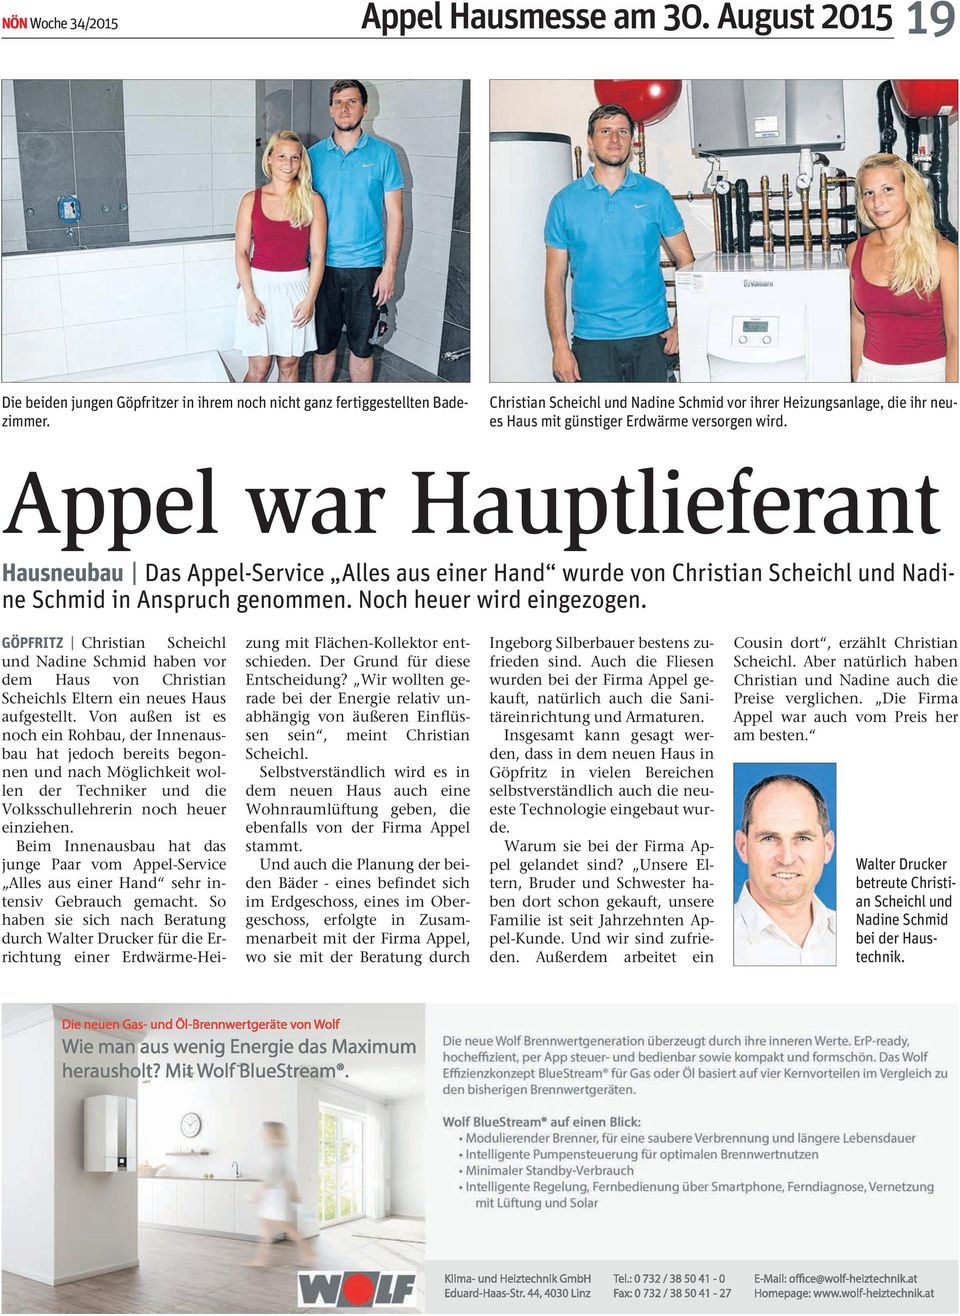 Appel war Hauptlieferant Hausneubau Das Appel-Service Alles aus einer Hand wurde von Christian Scheichl und Nadine Schmid in Anspruch genommen. Noch heuer wird eingezogen.